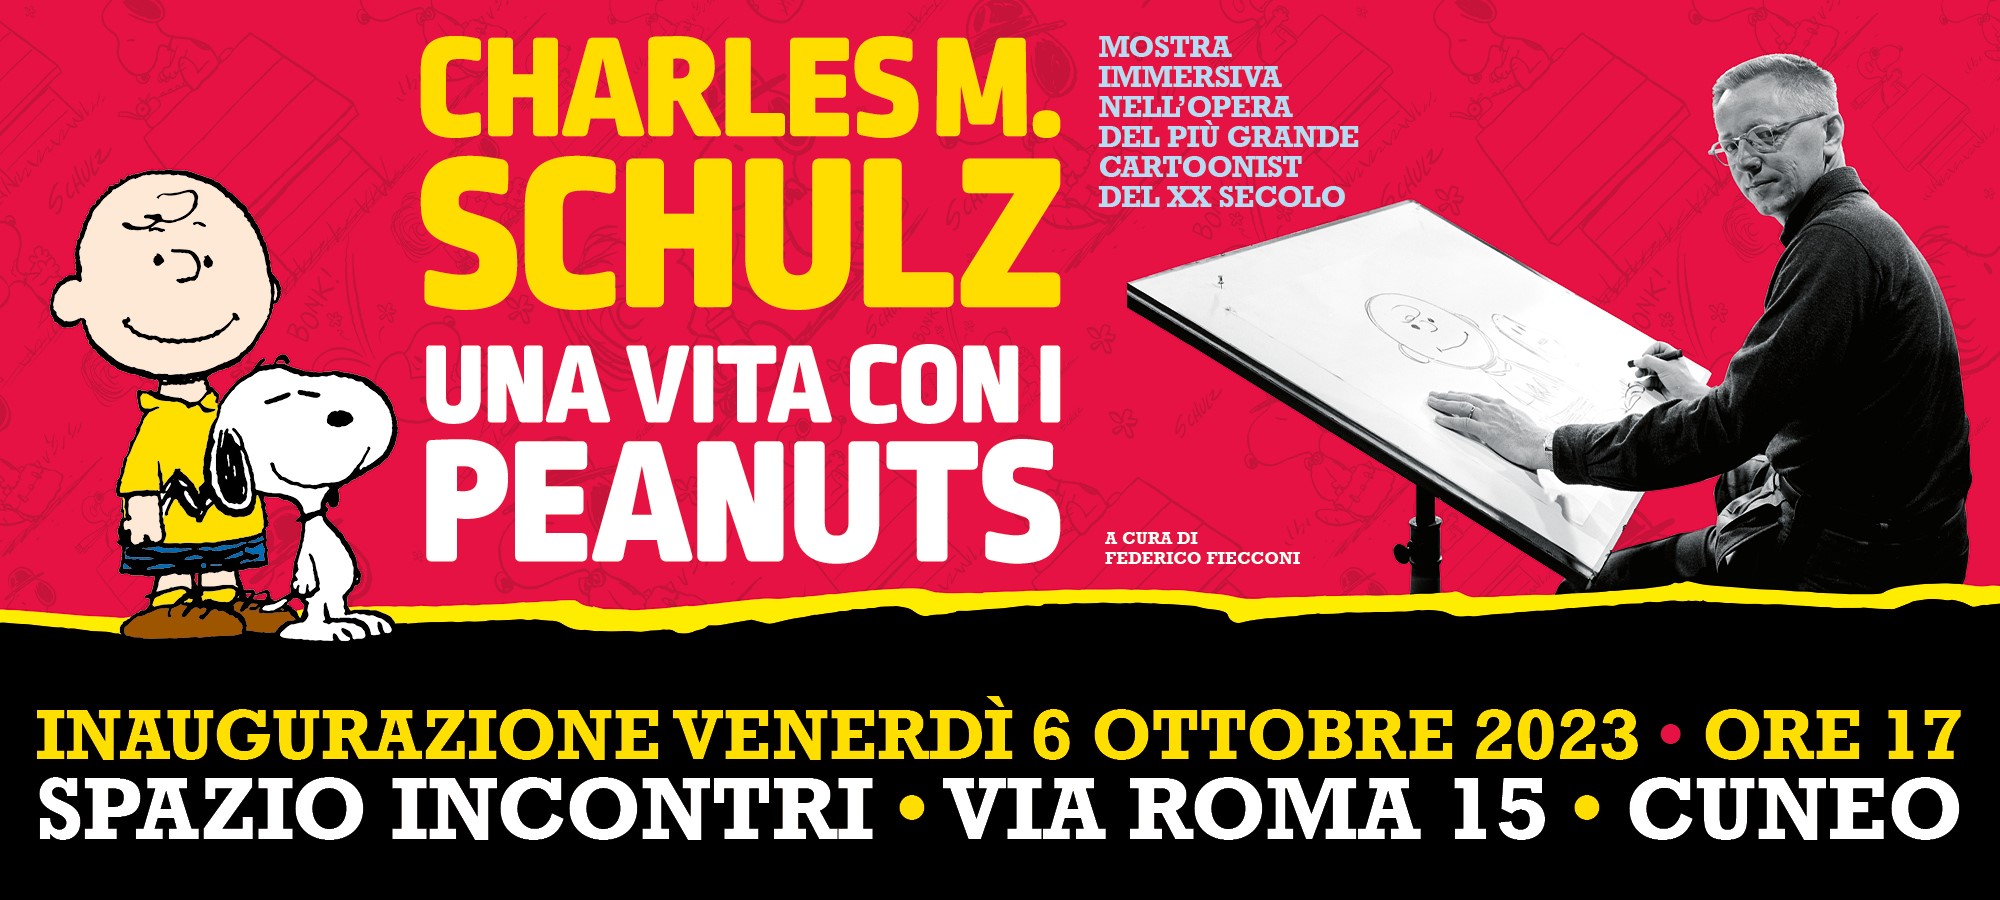 Charles M. Schulz, una vita con i Peanuts: una mostra immersiva!